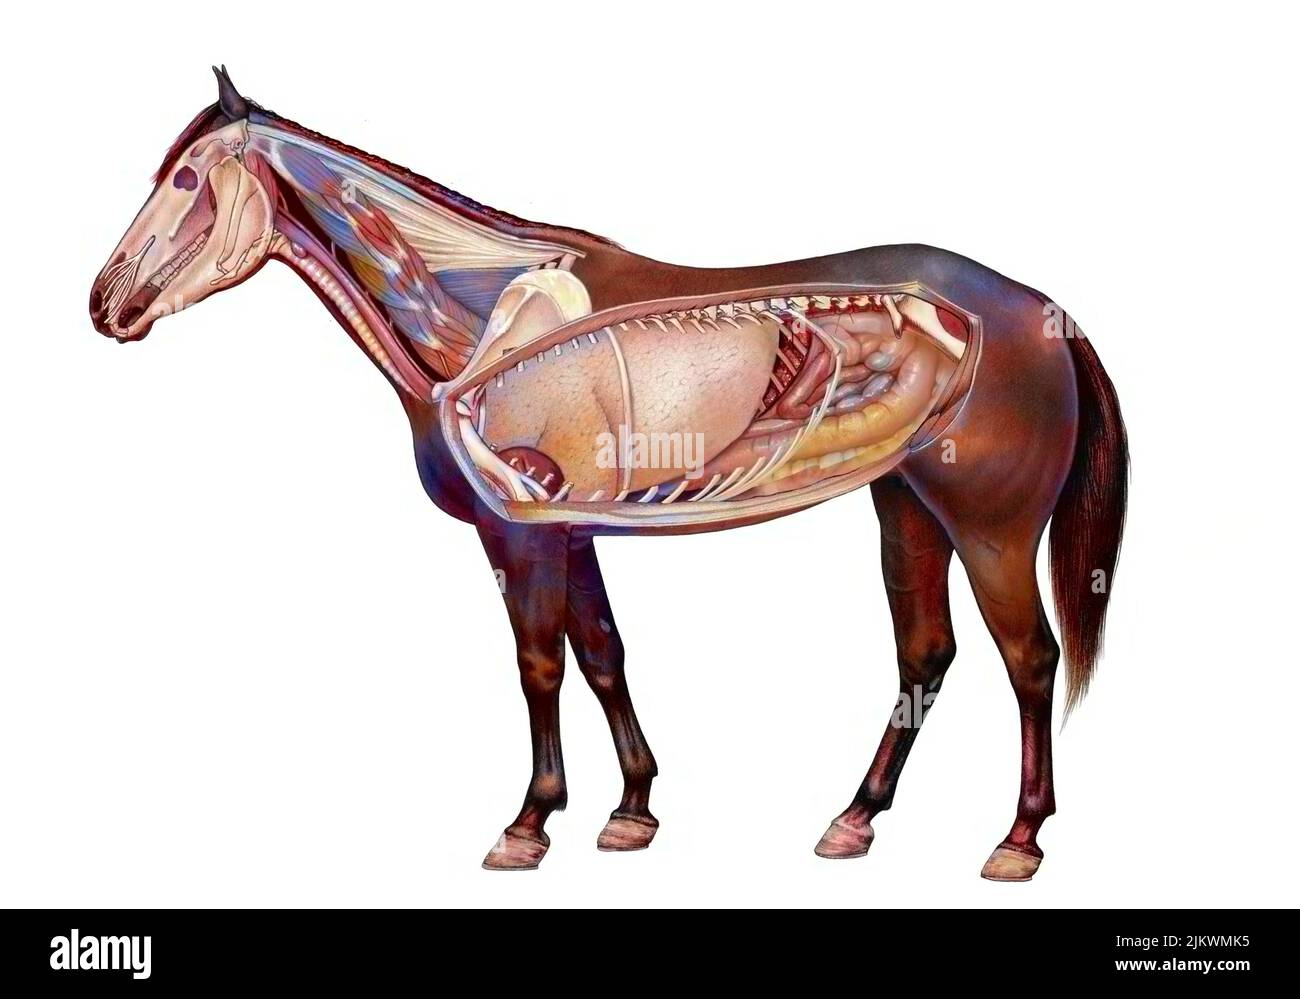 Anatomie eines Pferdes, das die Lunge, das Verdauungssystem zeigt. Stockfoto